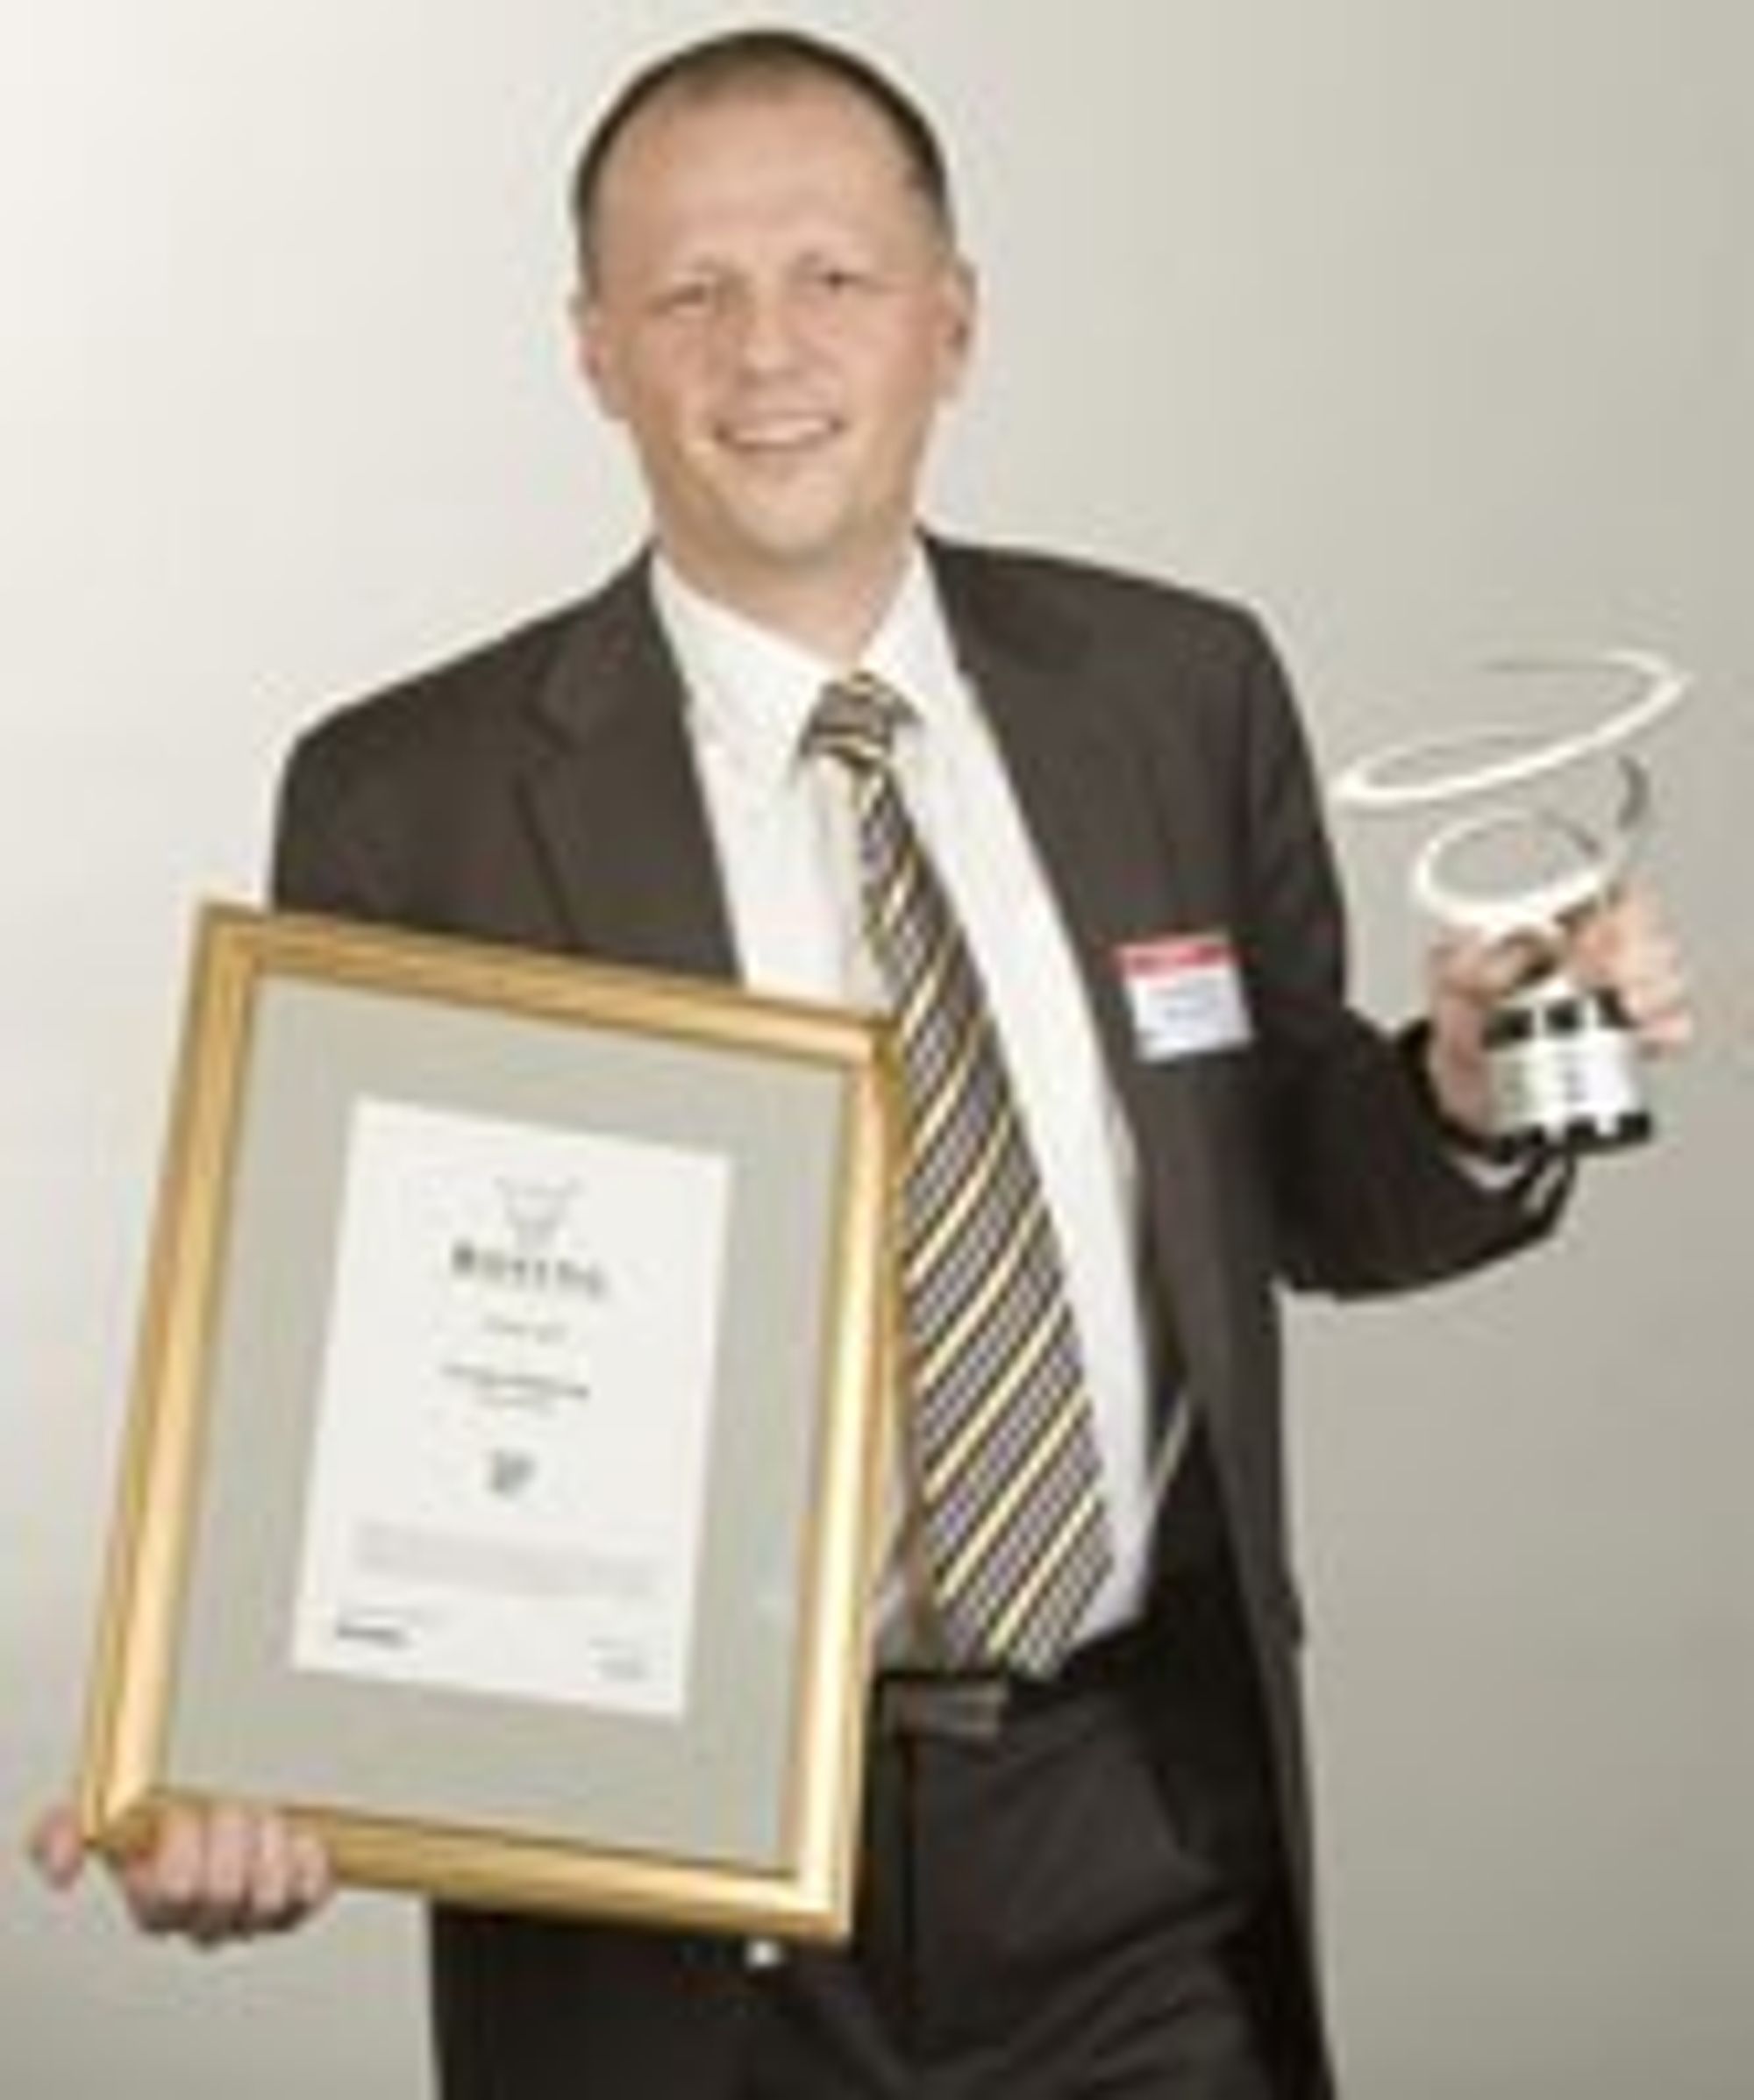 Frank Møllerop er en erfaren IT-leder. Her fra tildeling av Rosing-prisen som årets IT-leder i 2007.